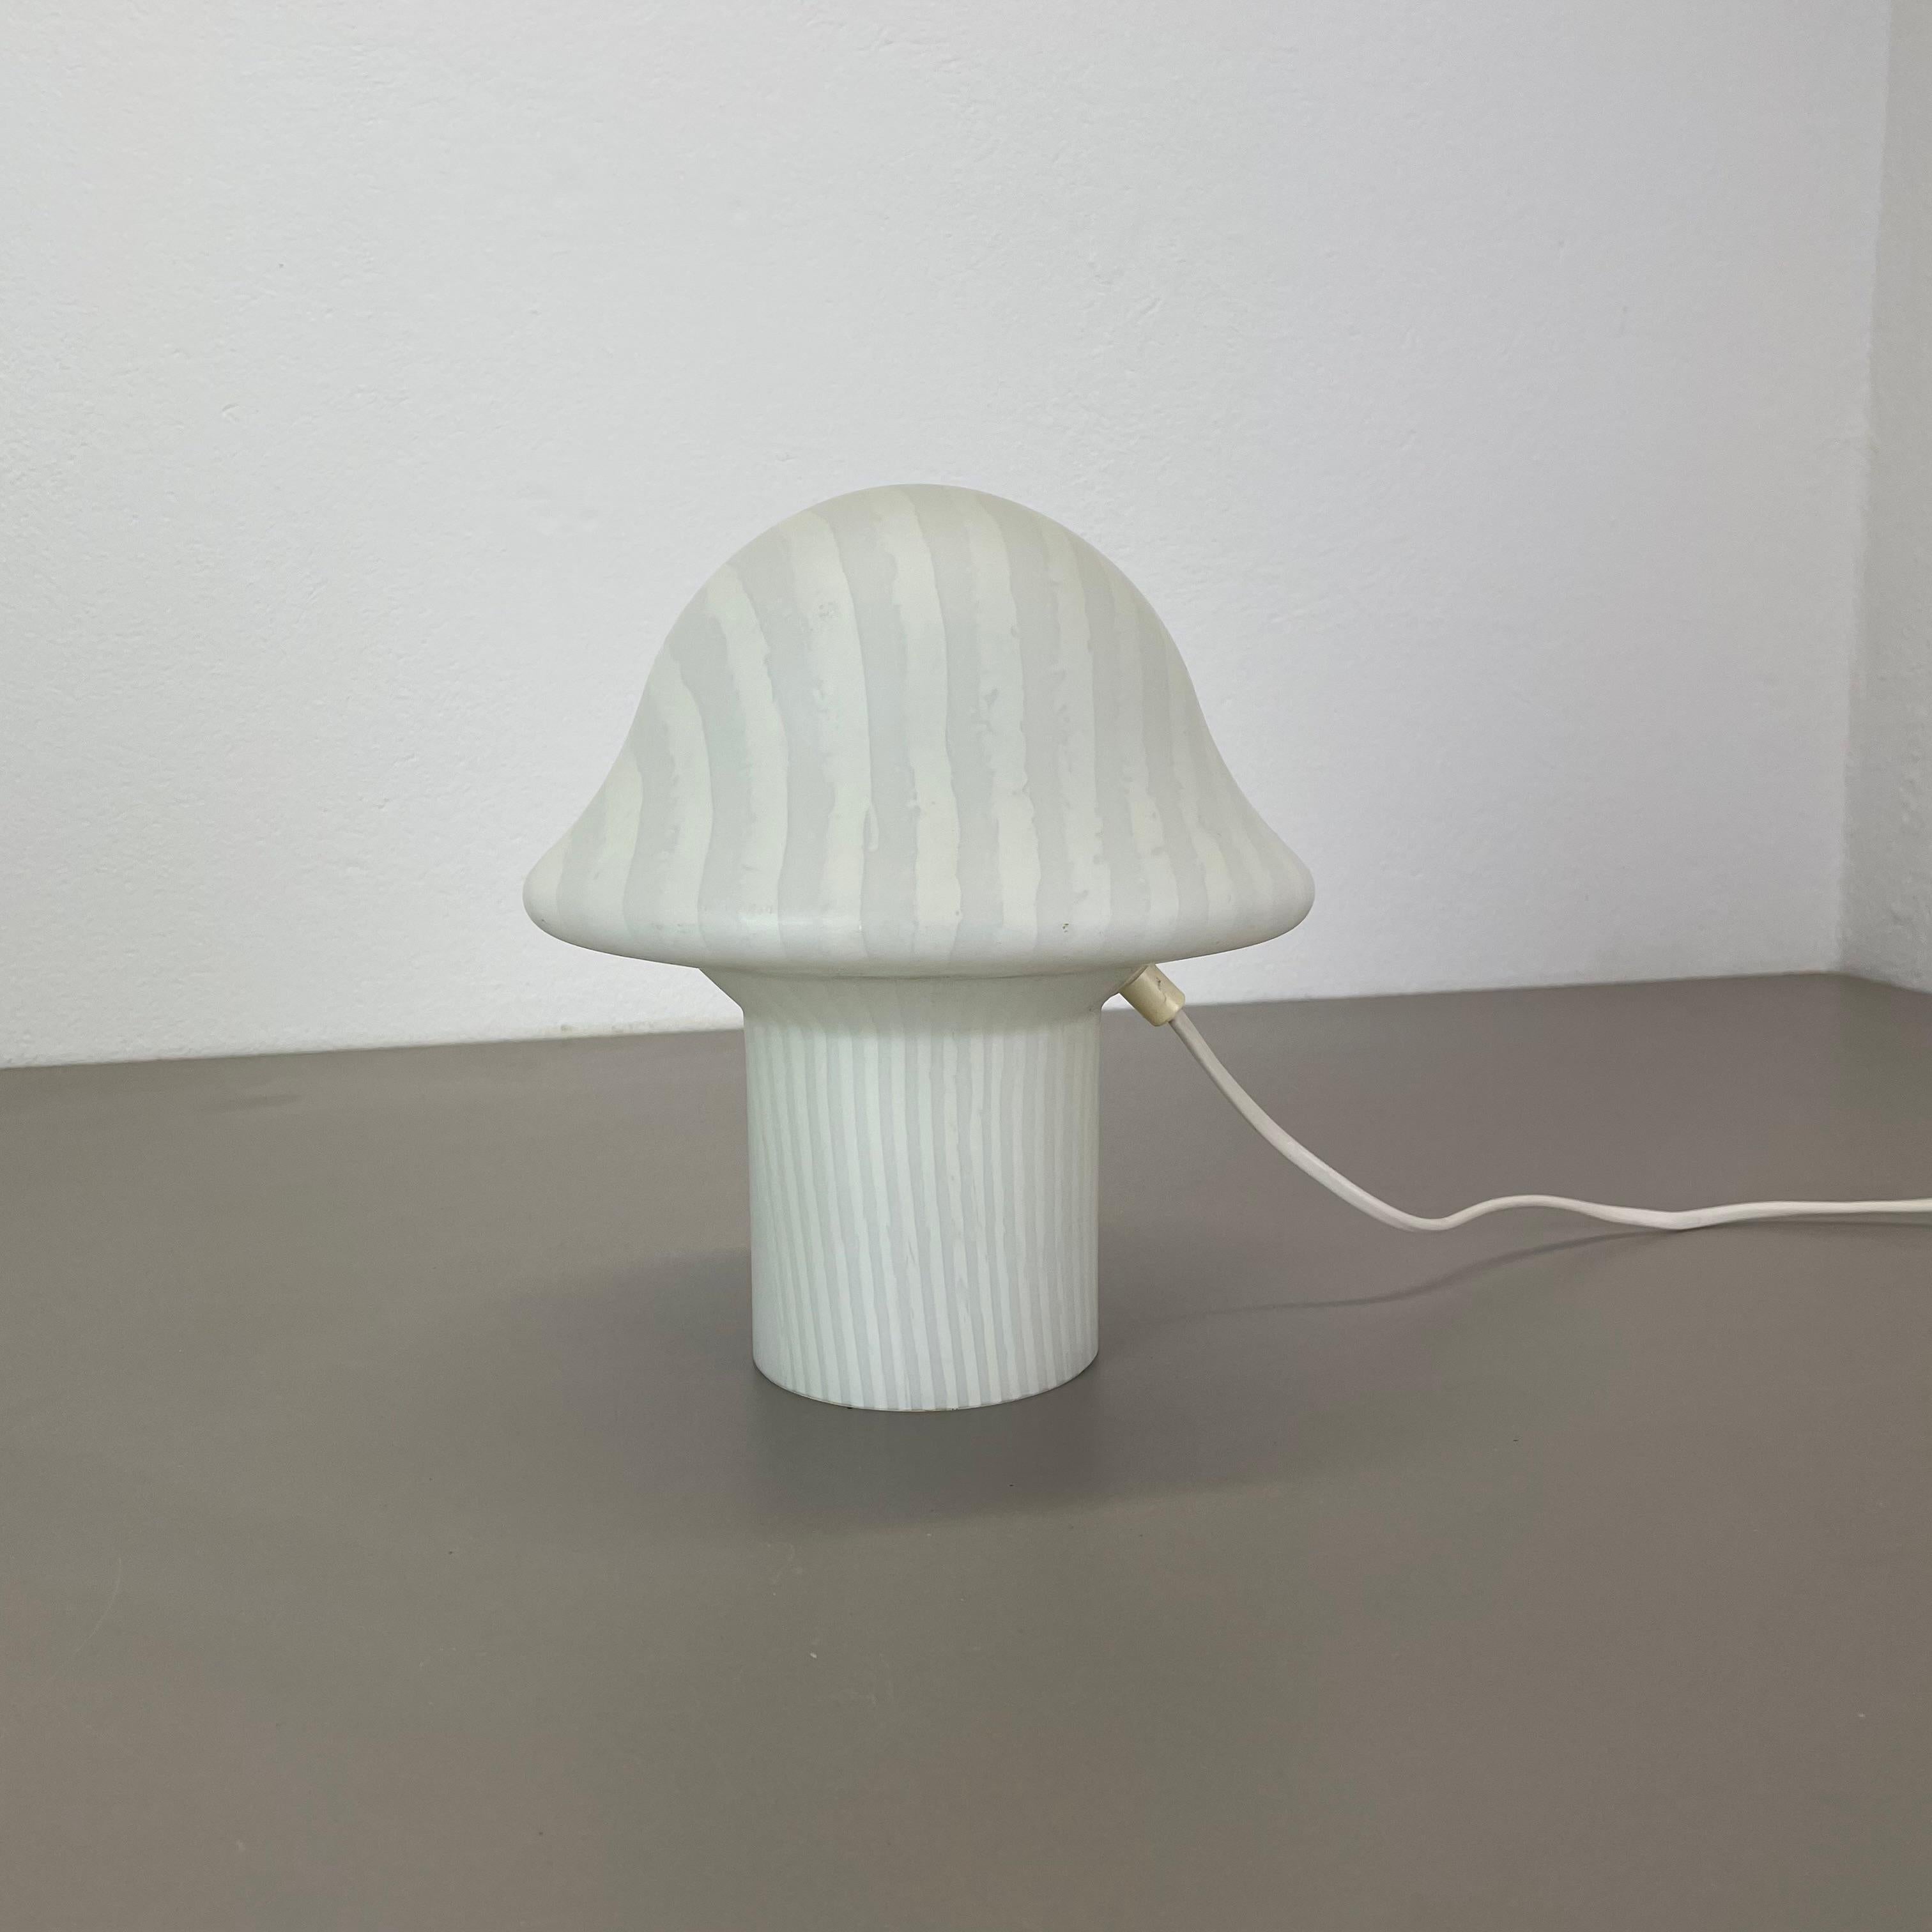 Article :

Lampe de bureau champignon

Producteur :

Peill & Putzler, Allemagne

Âge :

1970s


Description :

Lampe de bureau originale fabriquée dans les années 1970 par Peil & Putzler en Allemagne. l'abat-jour est en verre en forme de champignon,